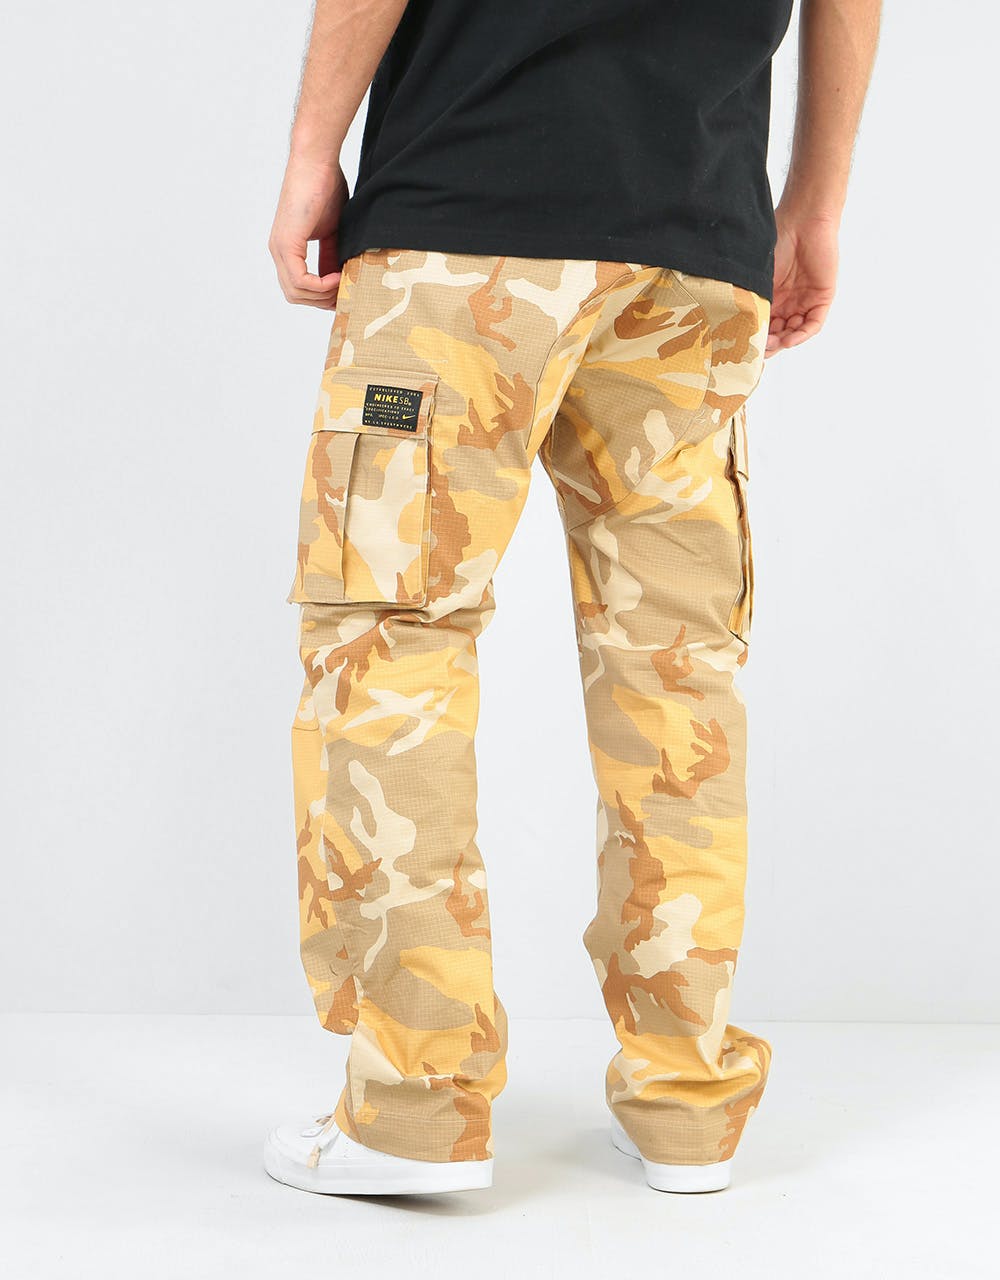 Nike SB FTM ERDL Flex Cargo Pants - Desert Ore